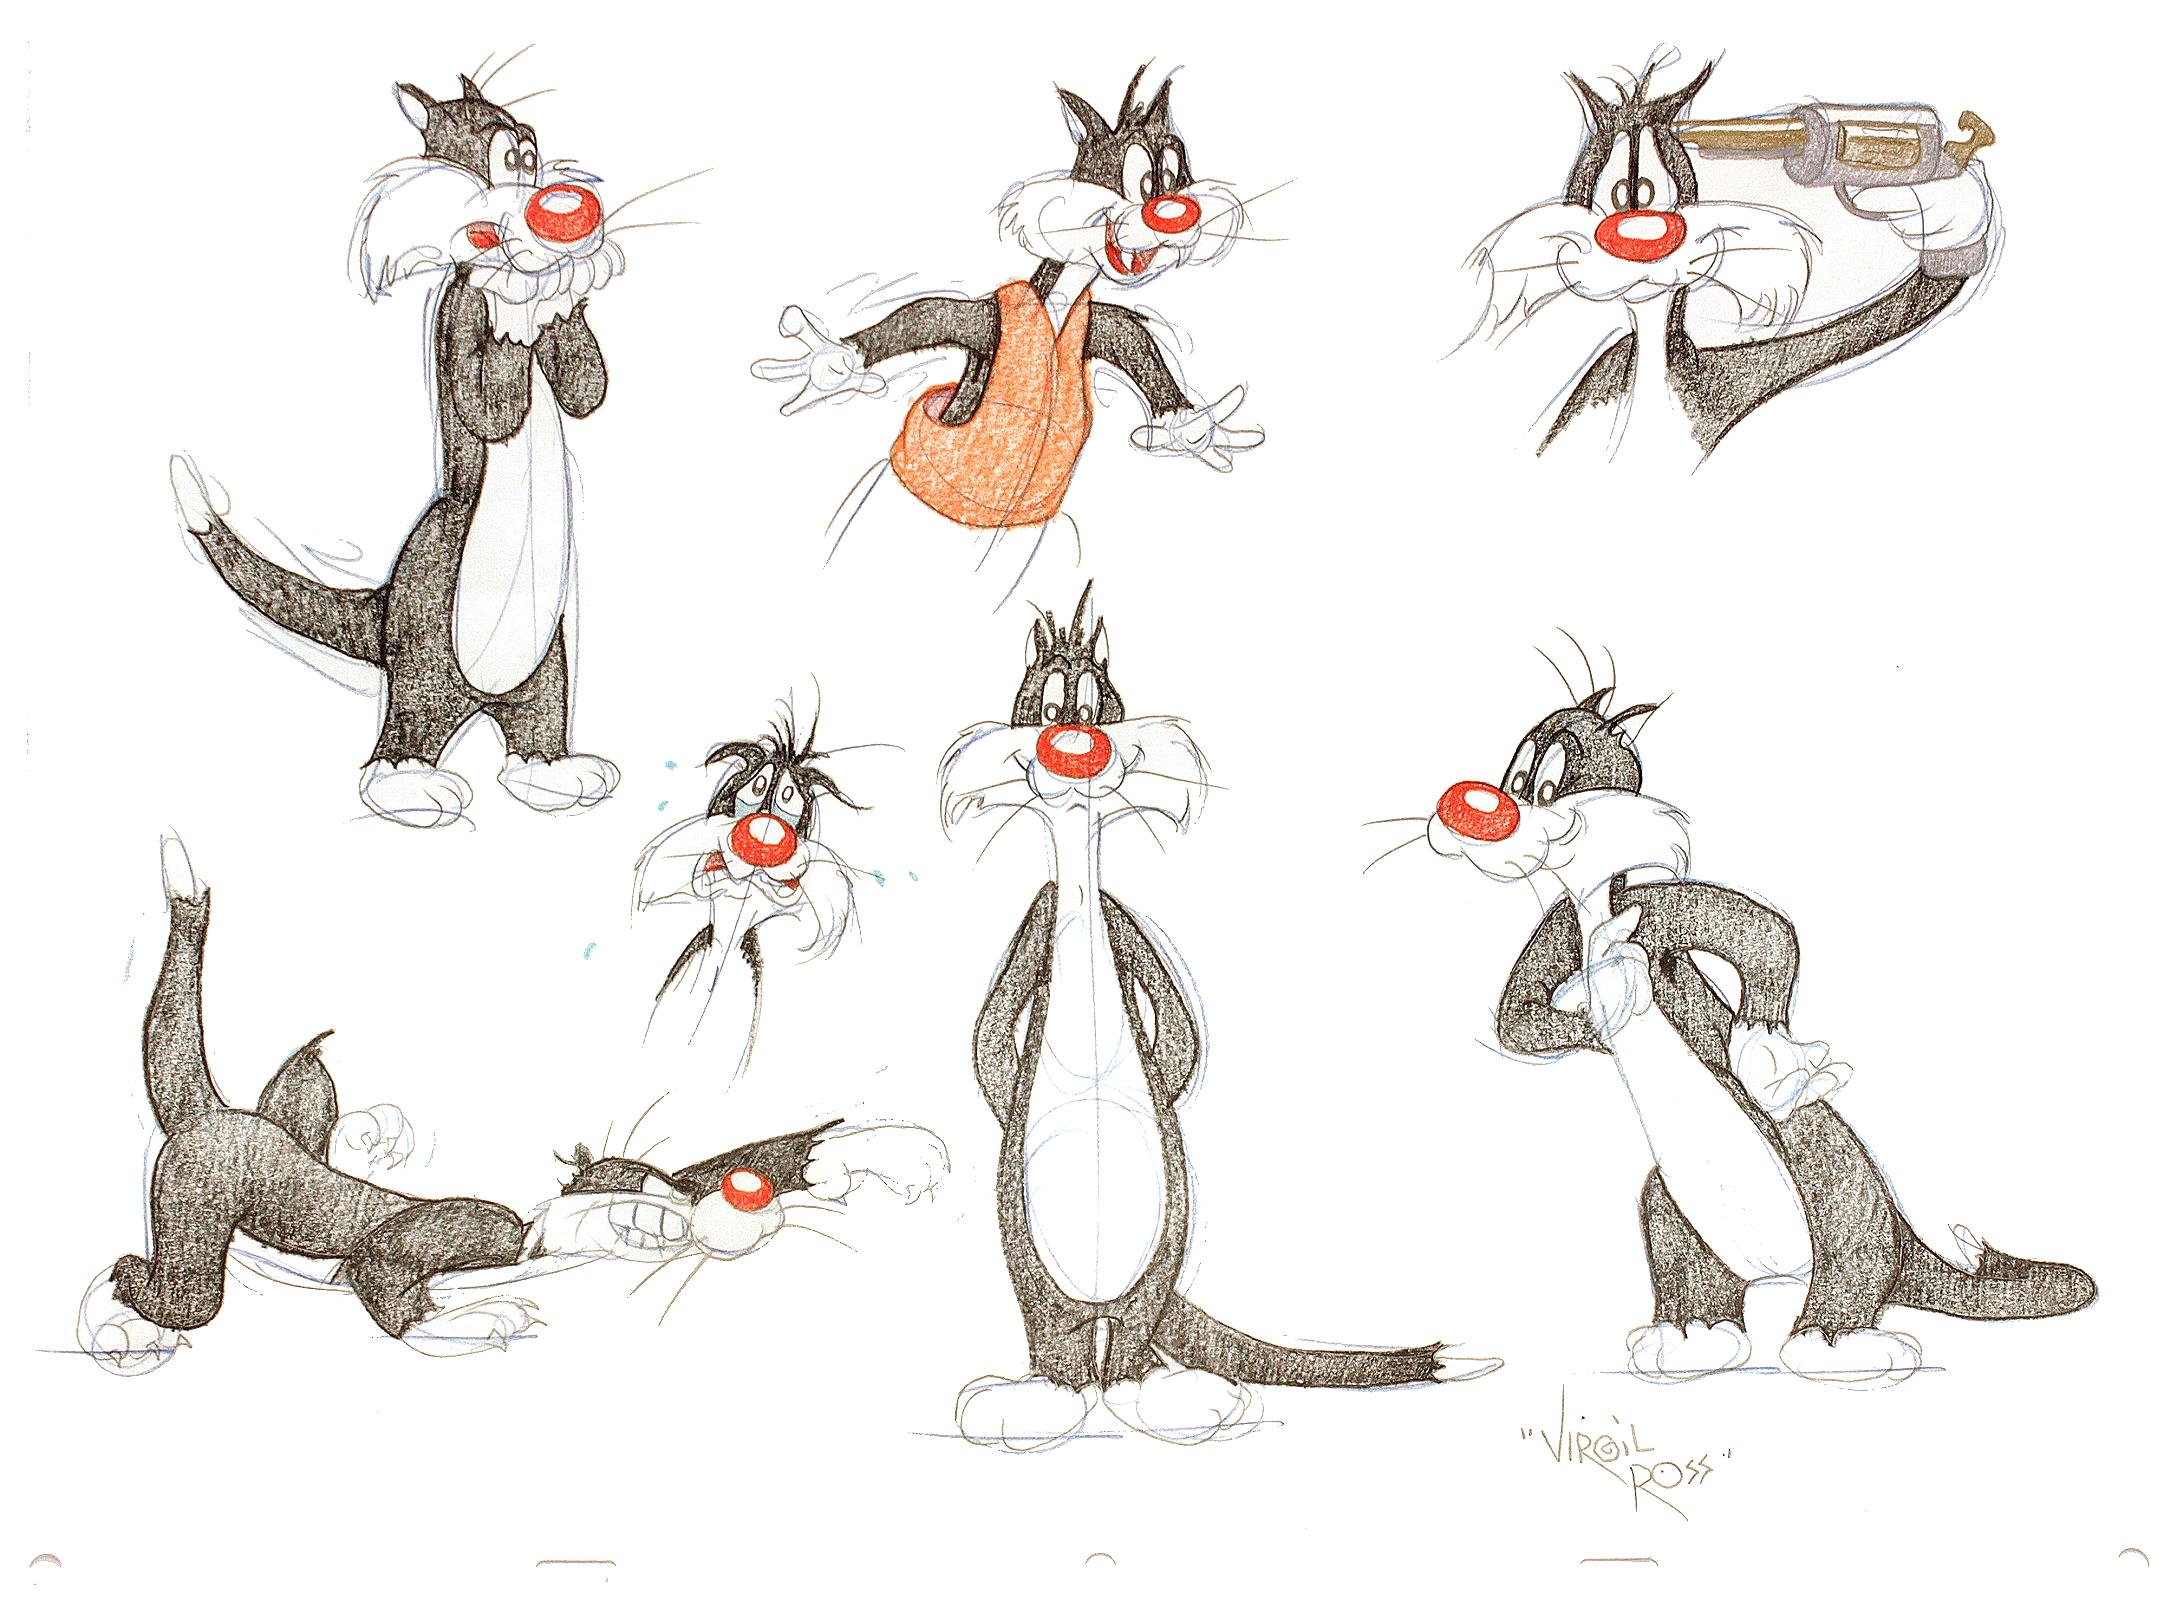 KÜNSTLER: Virgil Ross. 

TITEL: Sylvester die Katze. (Sieben Originalzeichnungen).

VERLAG: Warner Brothers Studios, (ca. 1990er Jahre)

BESCHREIBUNG: SIEBEN ORIGINALZEICHNUNGEN VON SILVESTER DER KATZE. 17